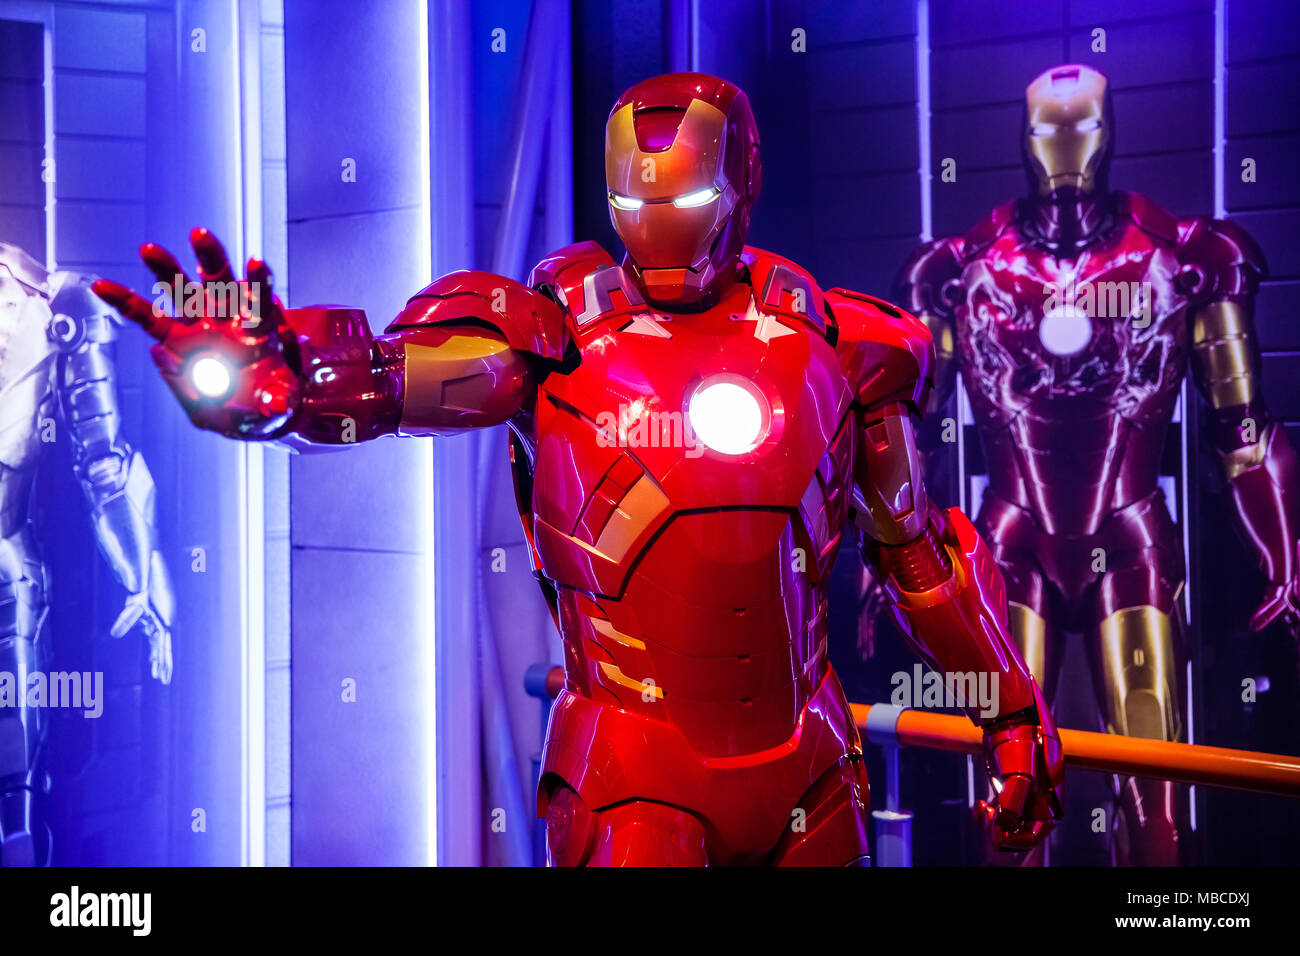 La figure de cire de Tony Stark l'Iron Man de Marvel Comics en musée de cire Madame Tussauds à Amsterdam, Pays-Bas Banque D'Images